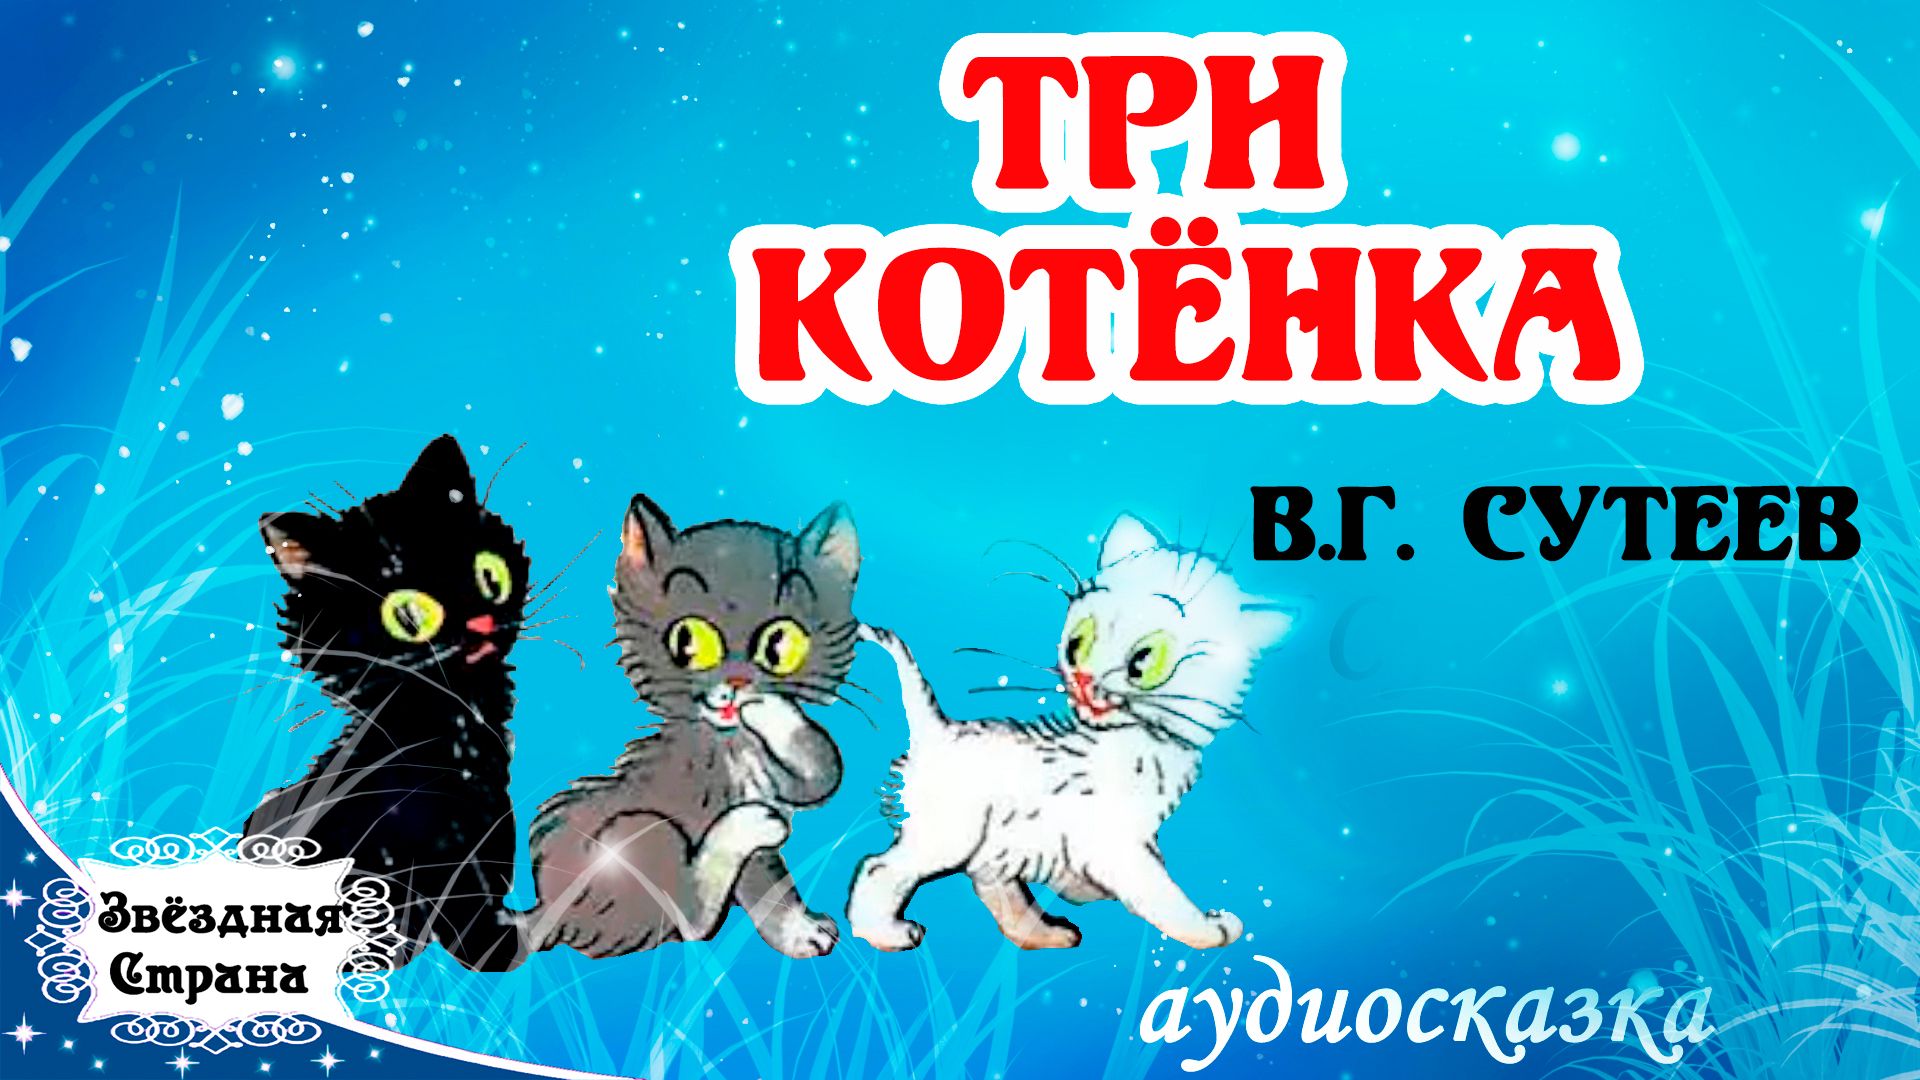 Аудиосказка с видеорядом Три котенка В.Г. Сутеев